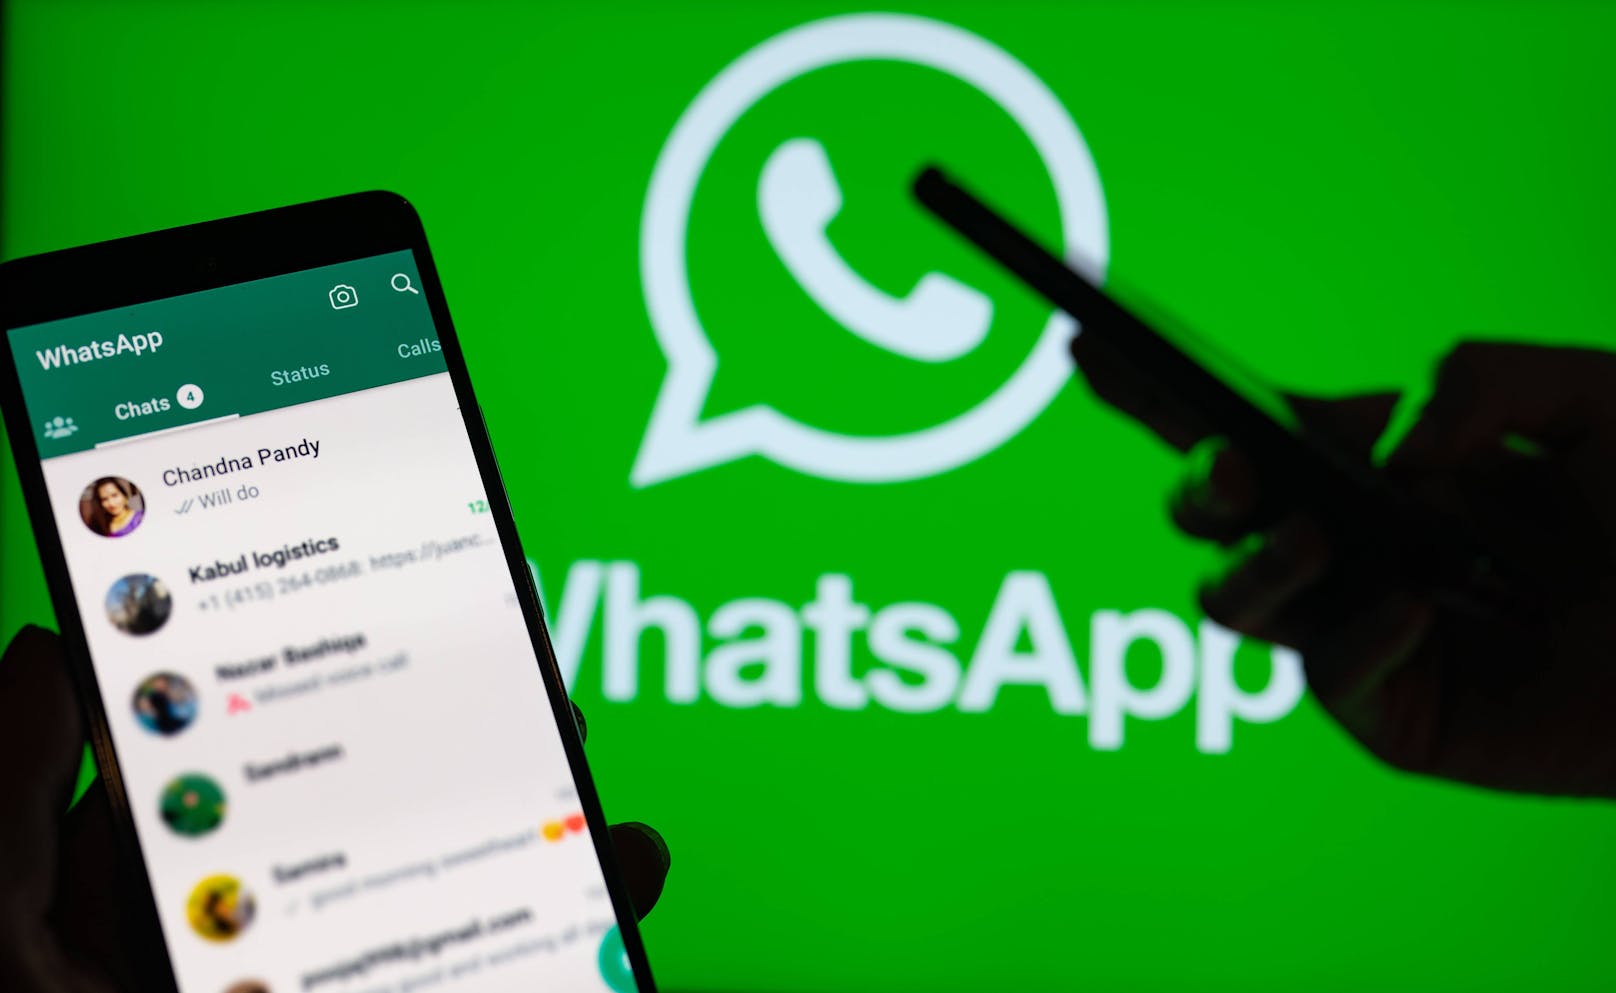 Neue WhatsApp-Funktionen – das müssen User nun wissen